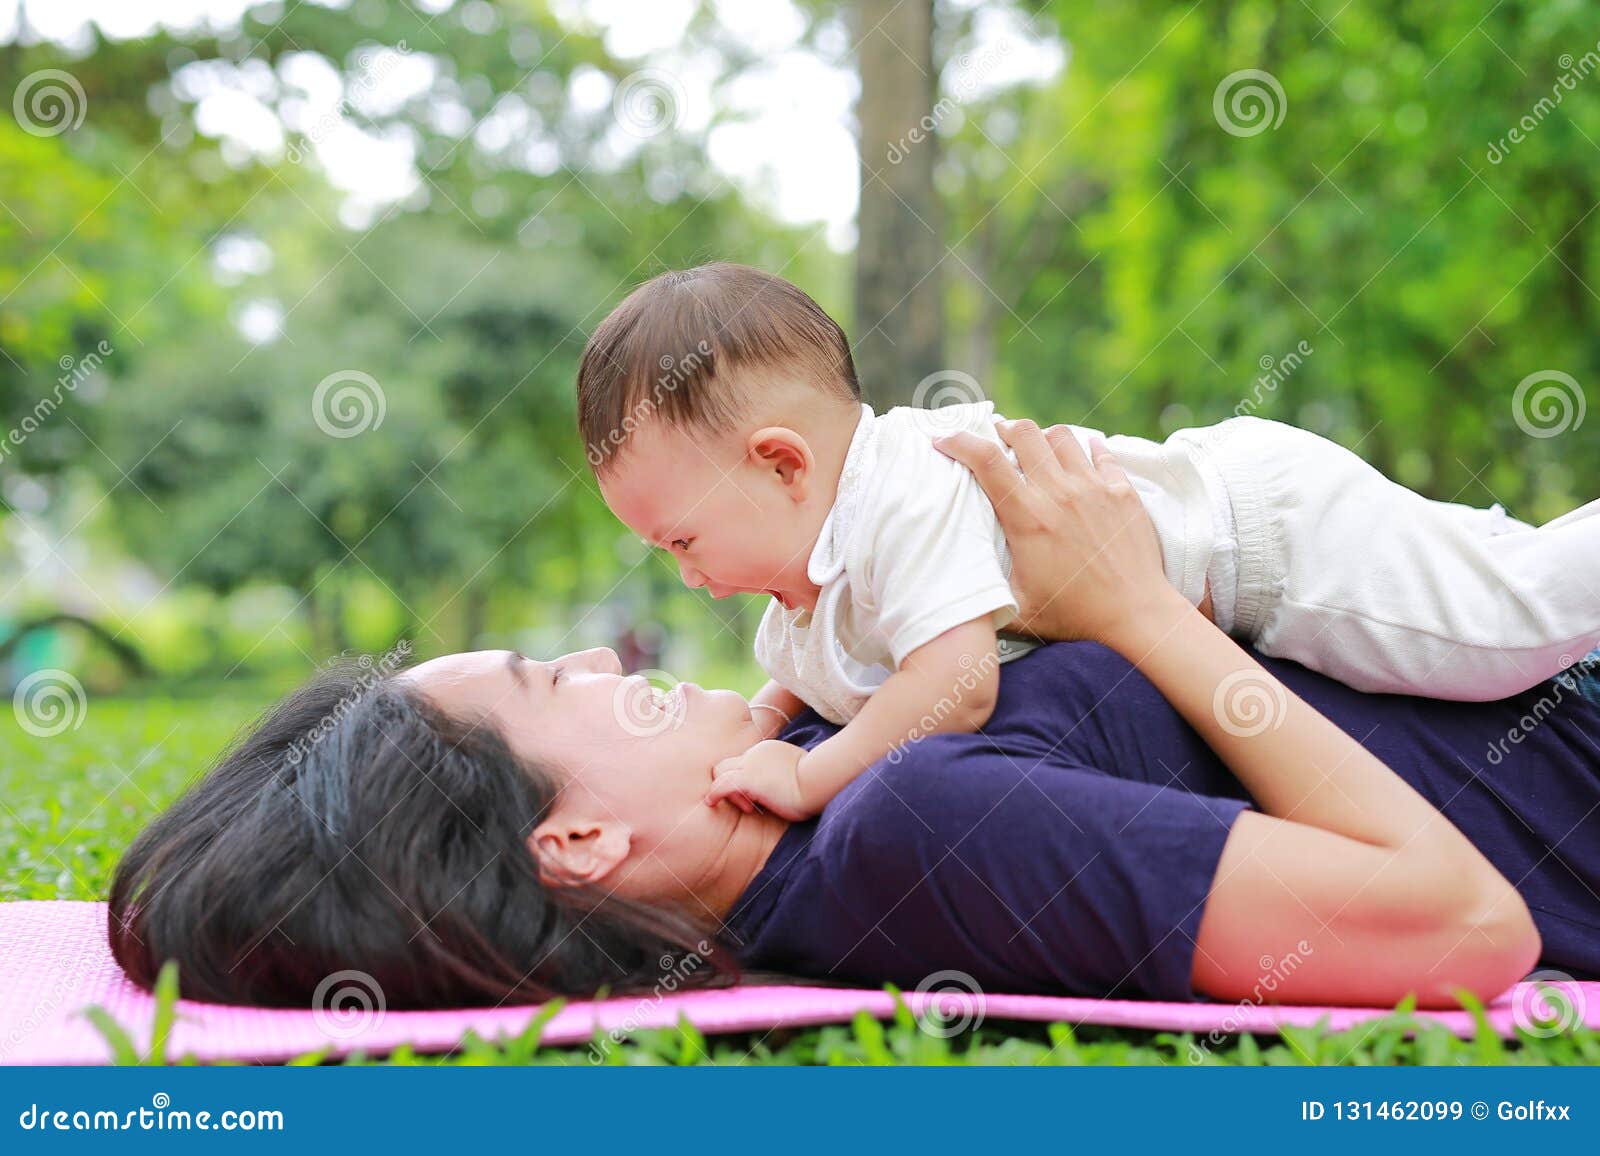 Мамаши лежа. Сын лежит на маме. Мама и сыночек лежат фото. Мама обнимает ребенка сидя на полу фото.